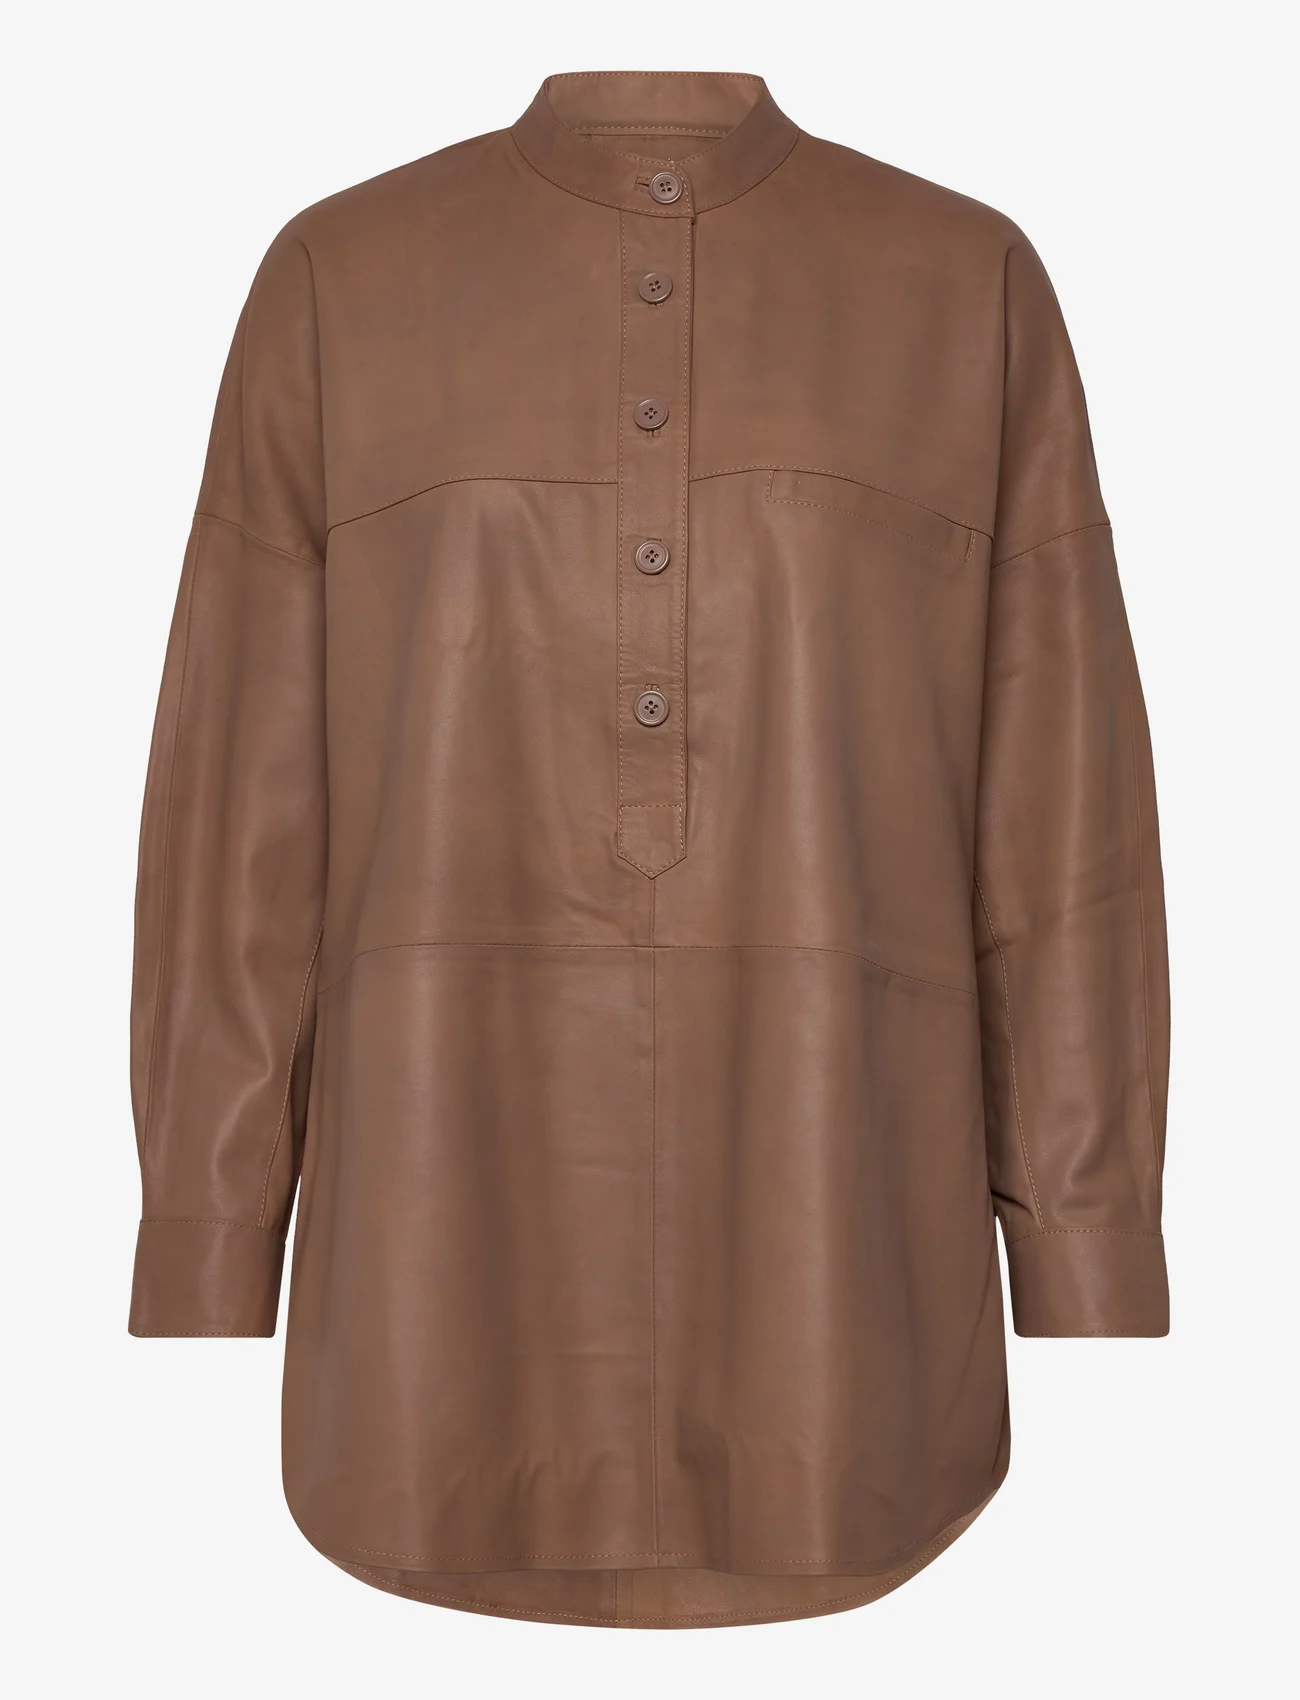 DEPECHE - Shirt - langärmlige hemden - 199 nougat - 0